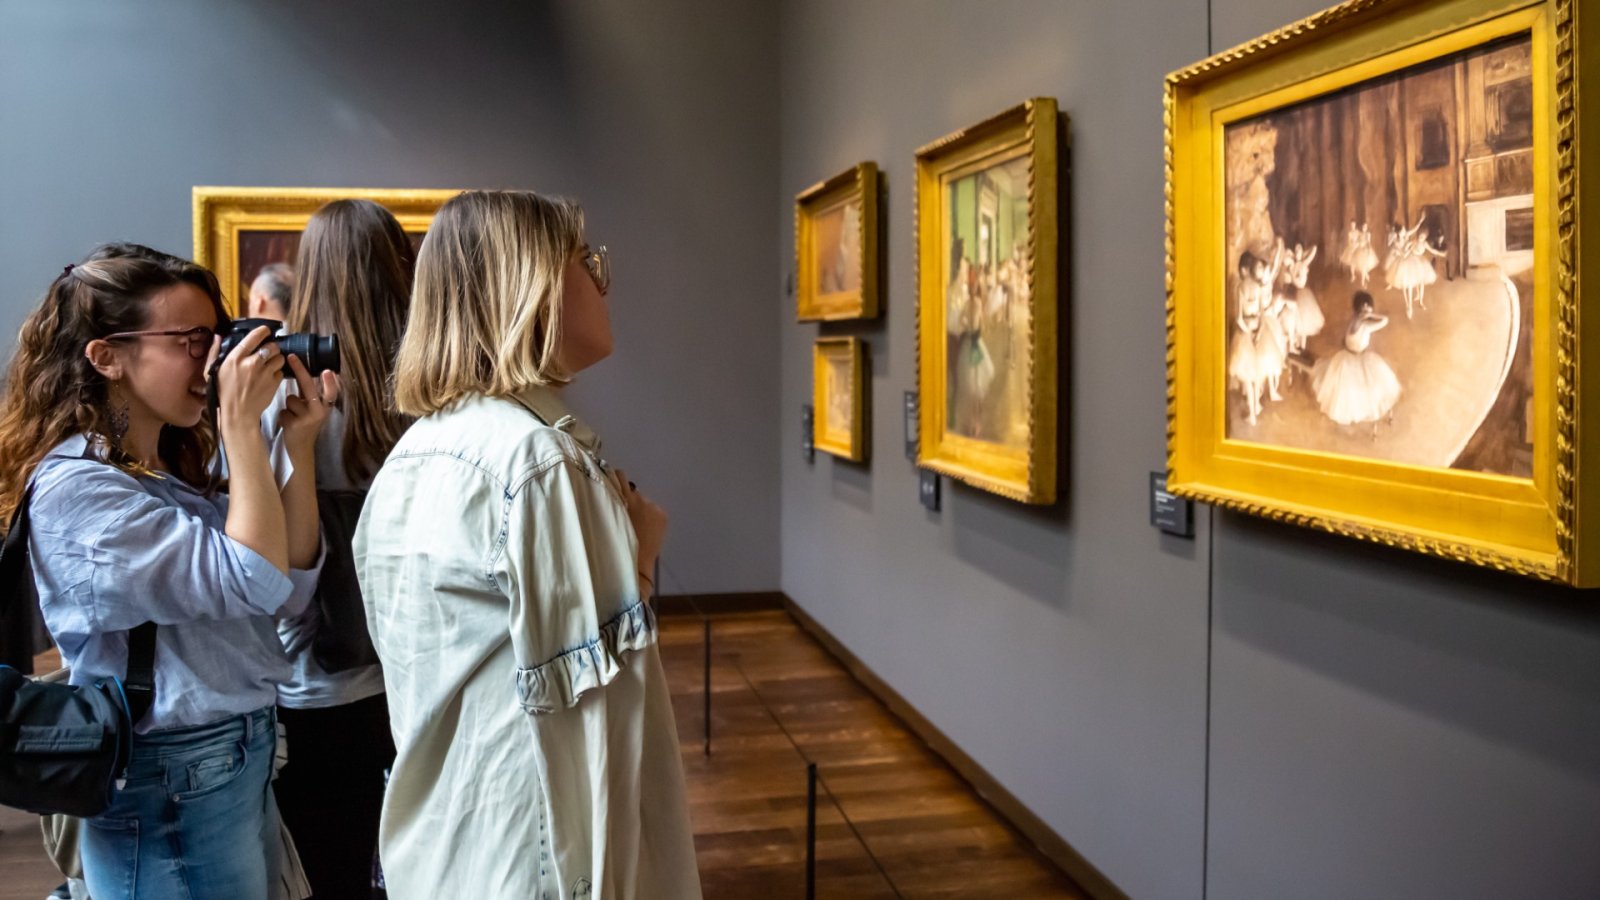 Αυτά τα διάσημα έργα τέχνης από το Musée d'Orsay επιστρέφονται επιτέλους στους κληρονόμους